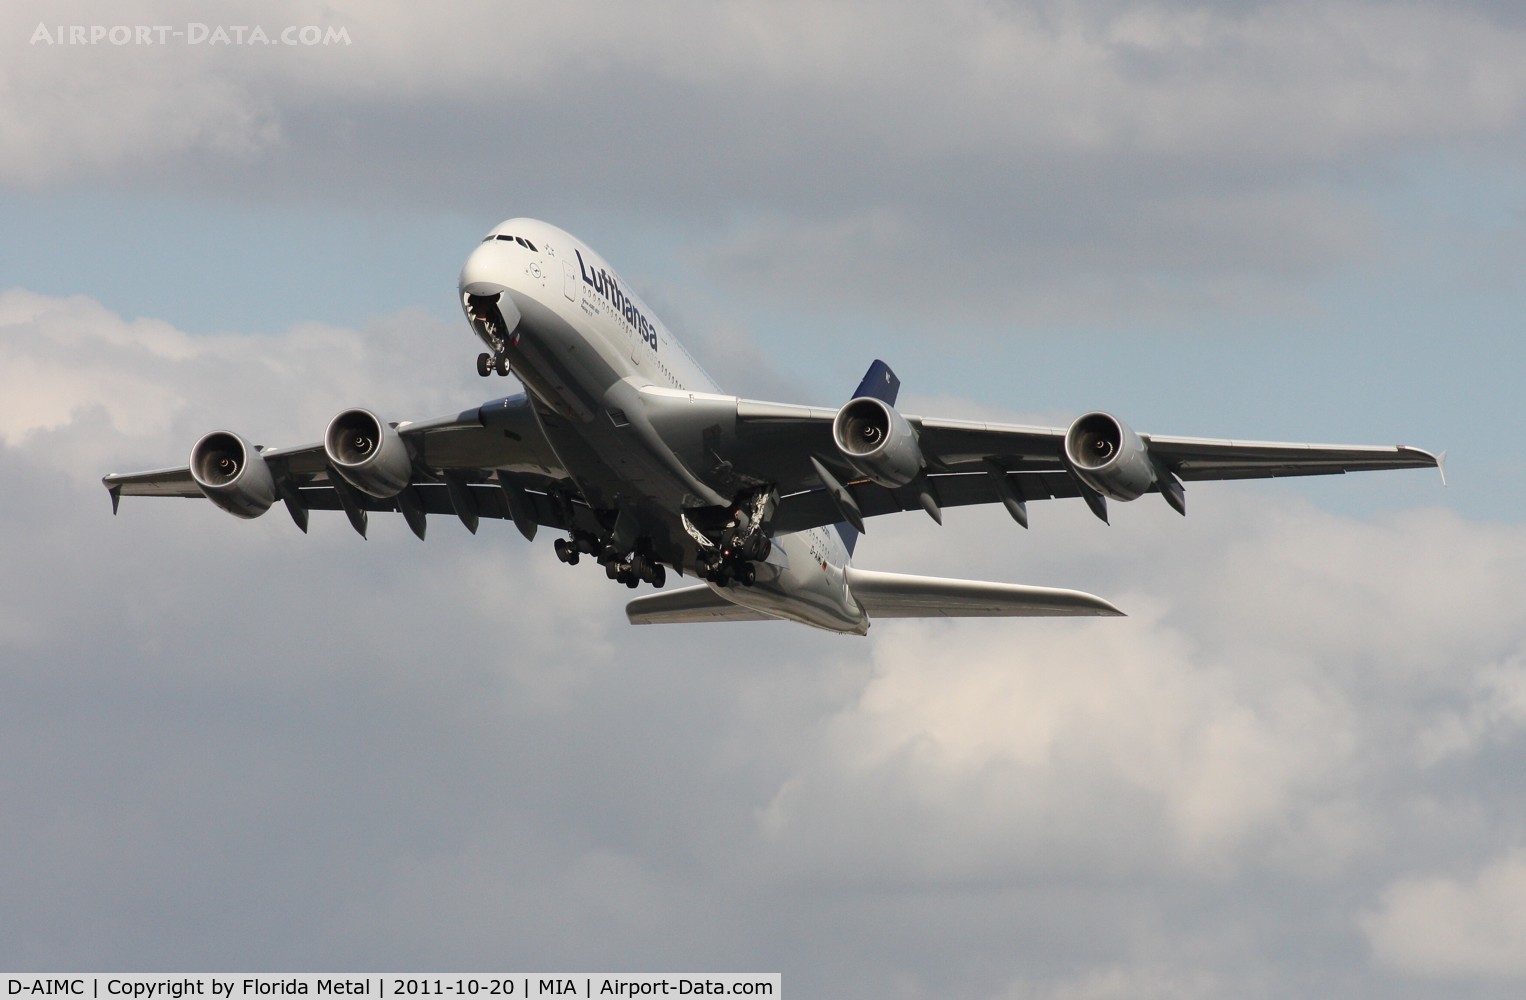 D-AIMC, 2010 Airbus A380-841 C/N 044, Lufthansa A380